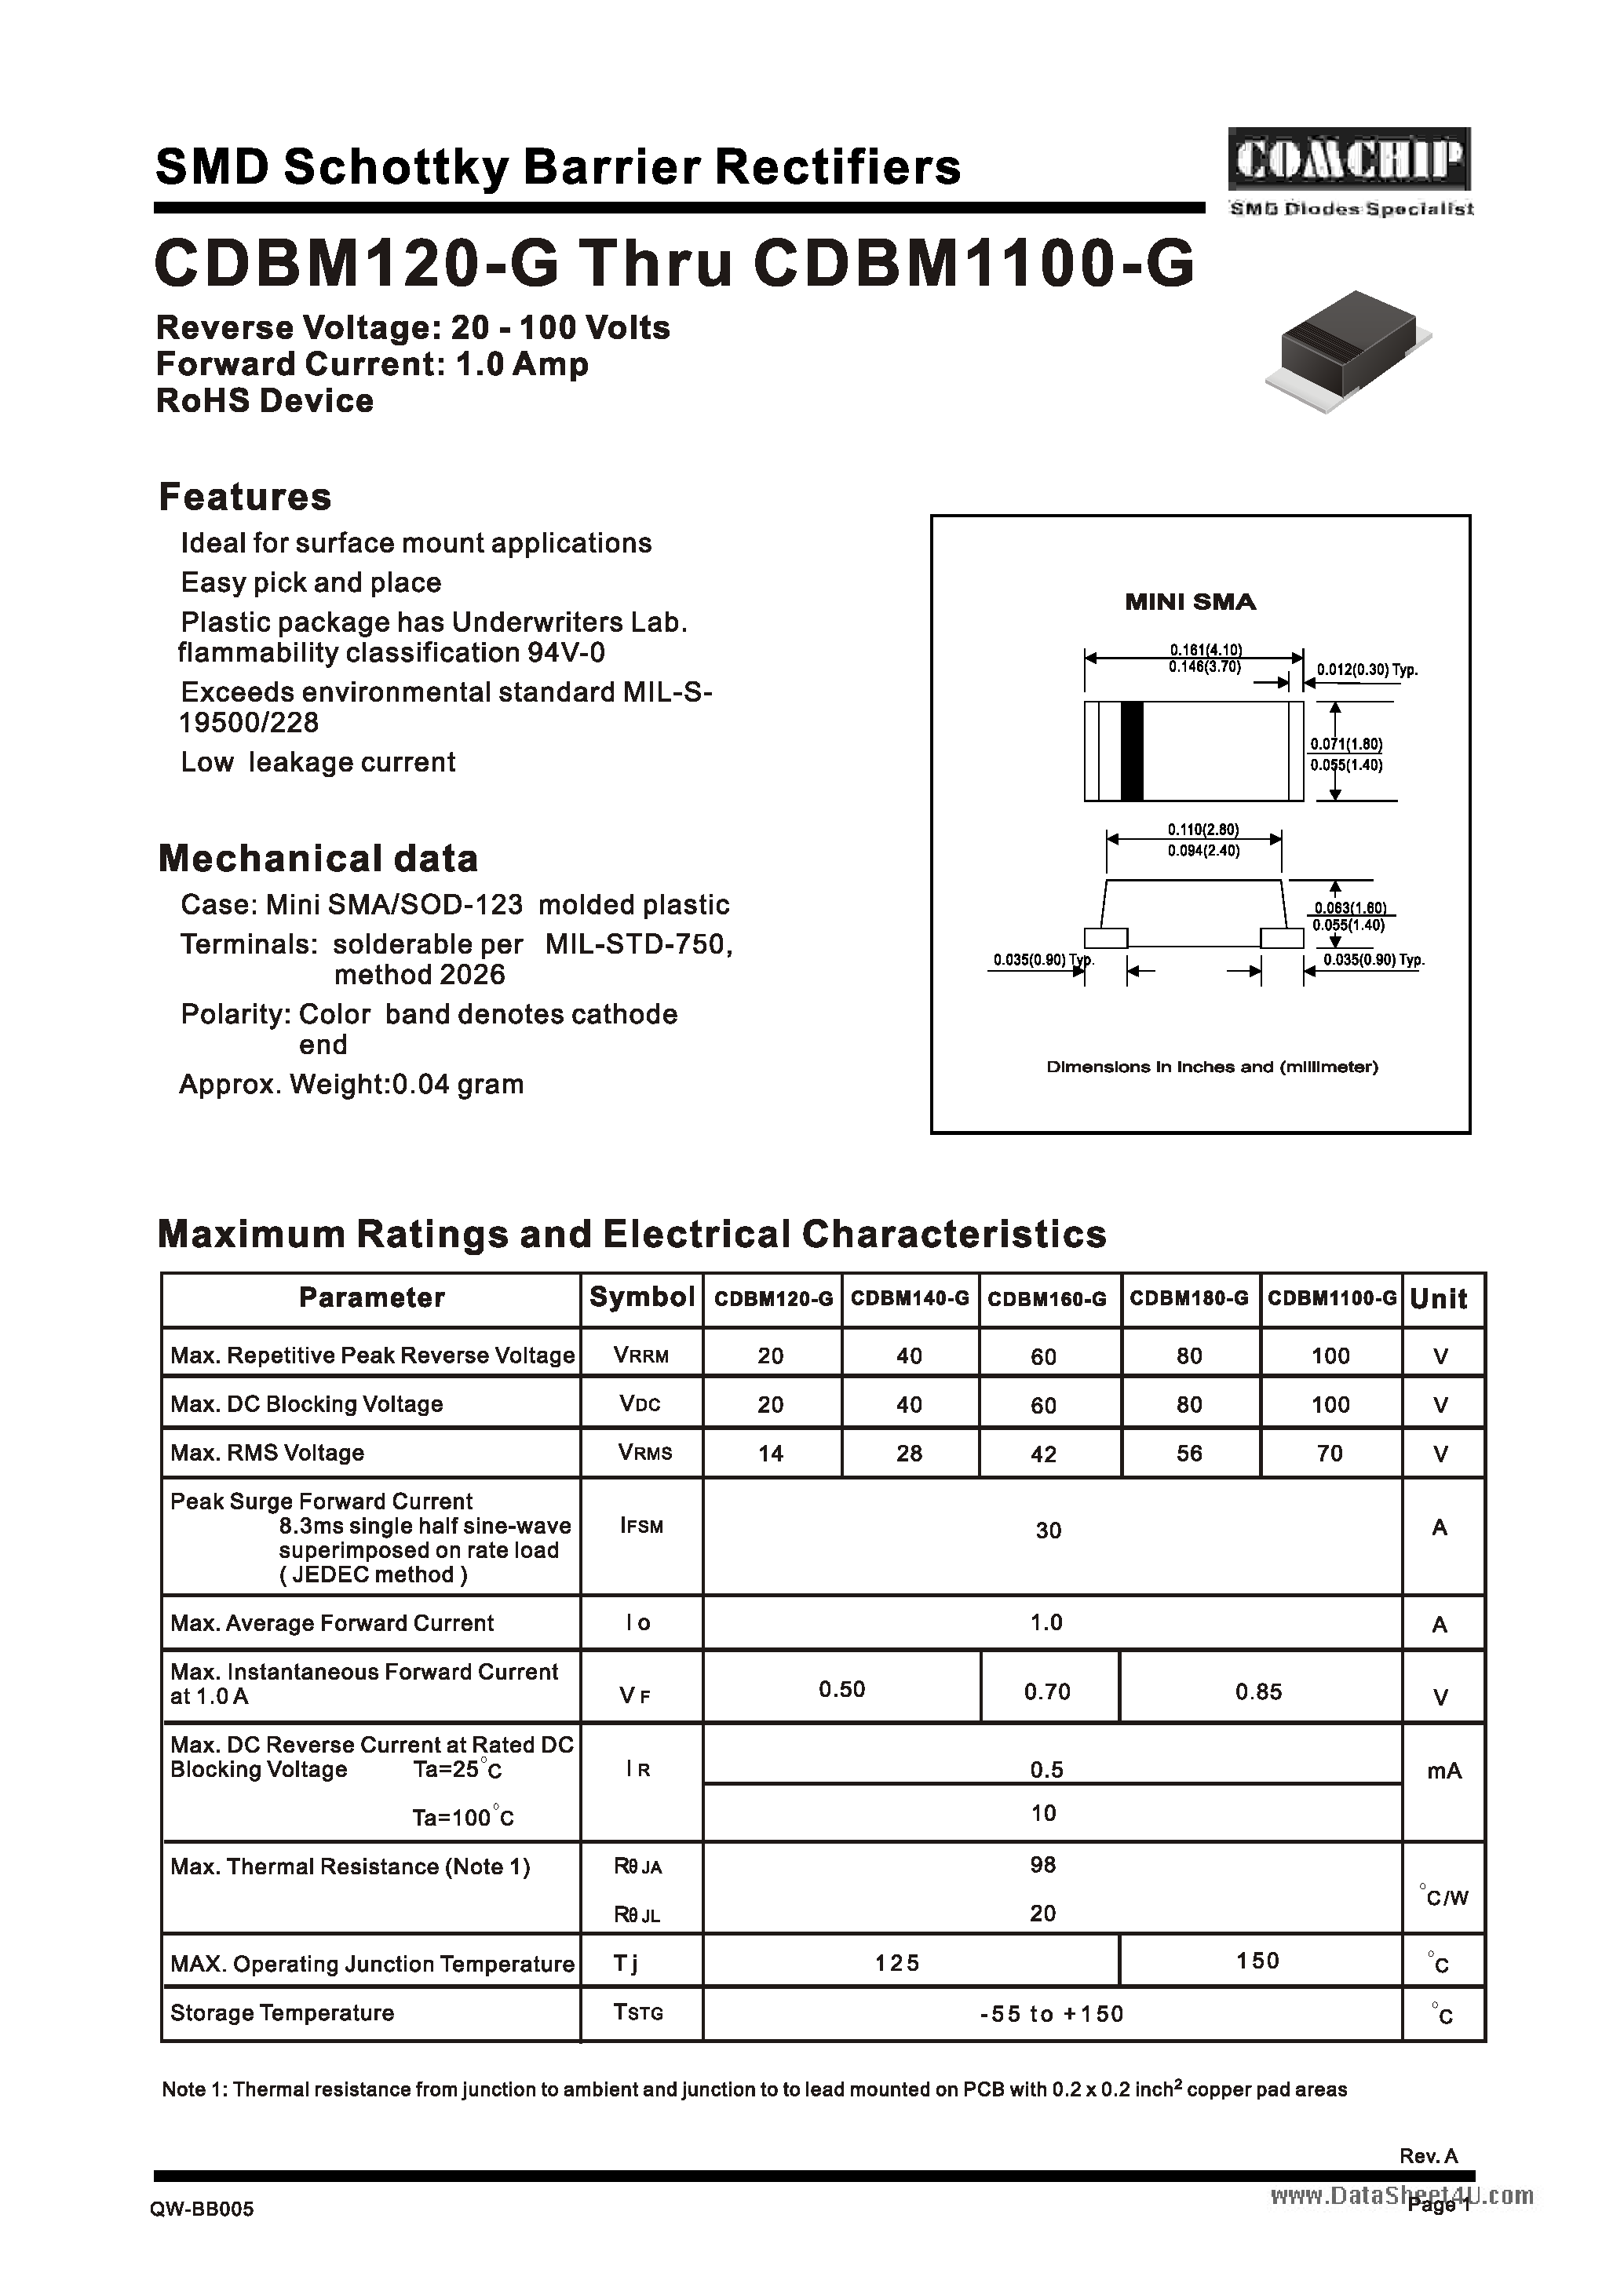 Datasheet CDBM1100-G - (CDBM120-G - CDBM1100-G) SMD Schottky Barrier Rectifiers page 1